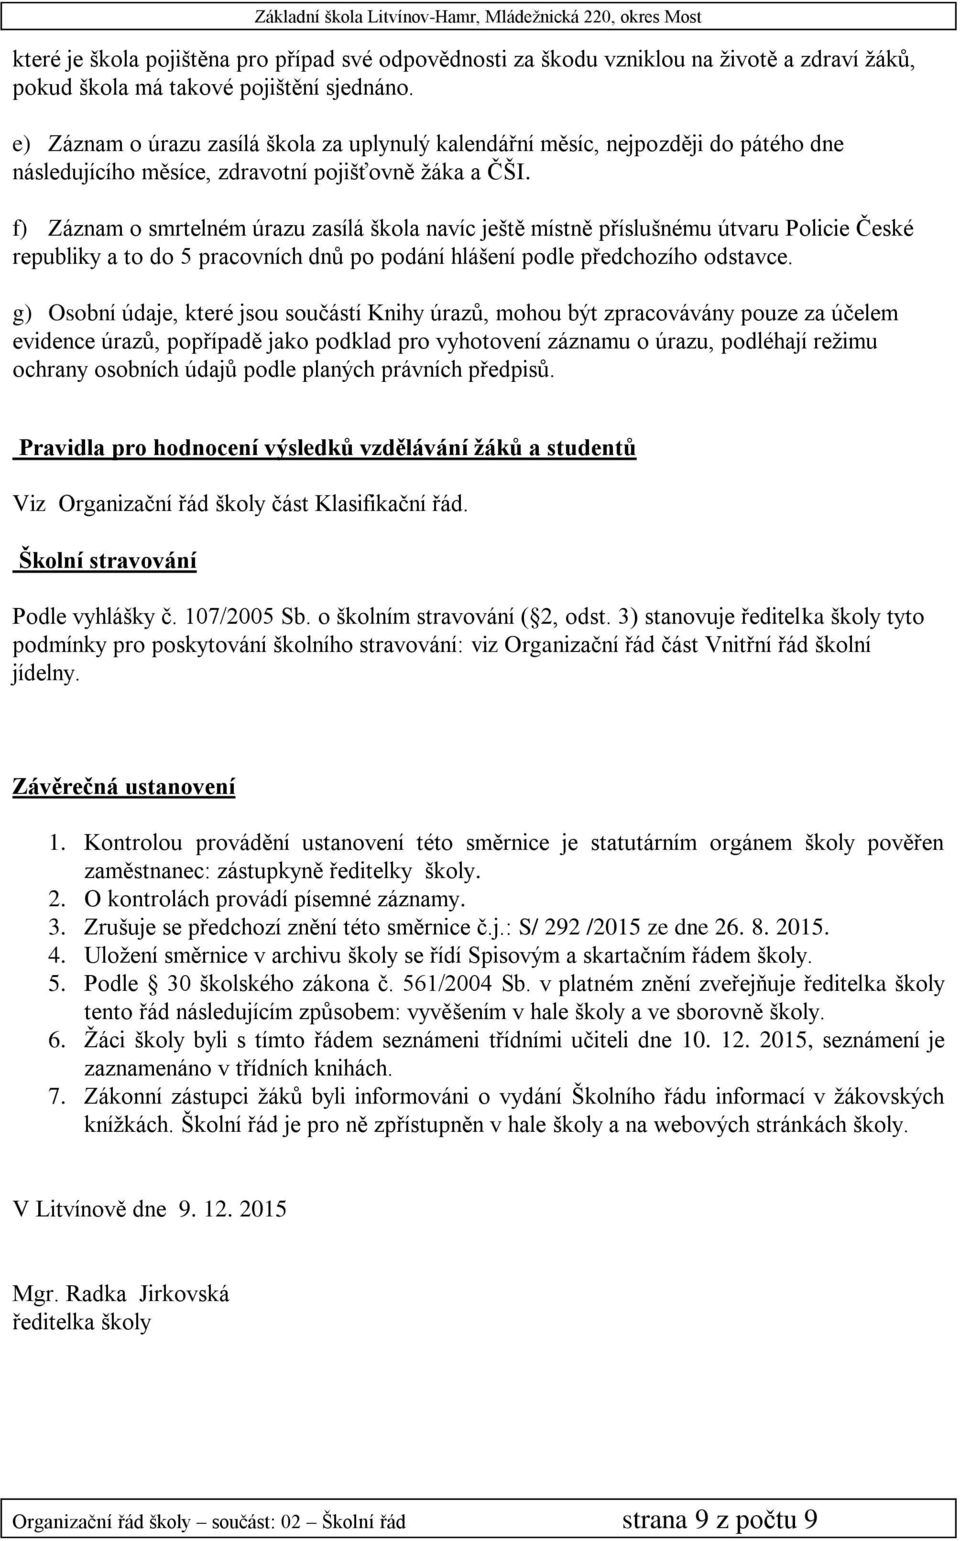 f) Záznam o smrtelném úrazu zasílá škola navíc ještě místně příslušnému útvaru Policie České republiky a to do 5 pracovních dnů po podání hlášení podle předchozího odstavce.